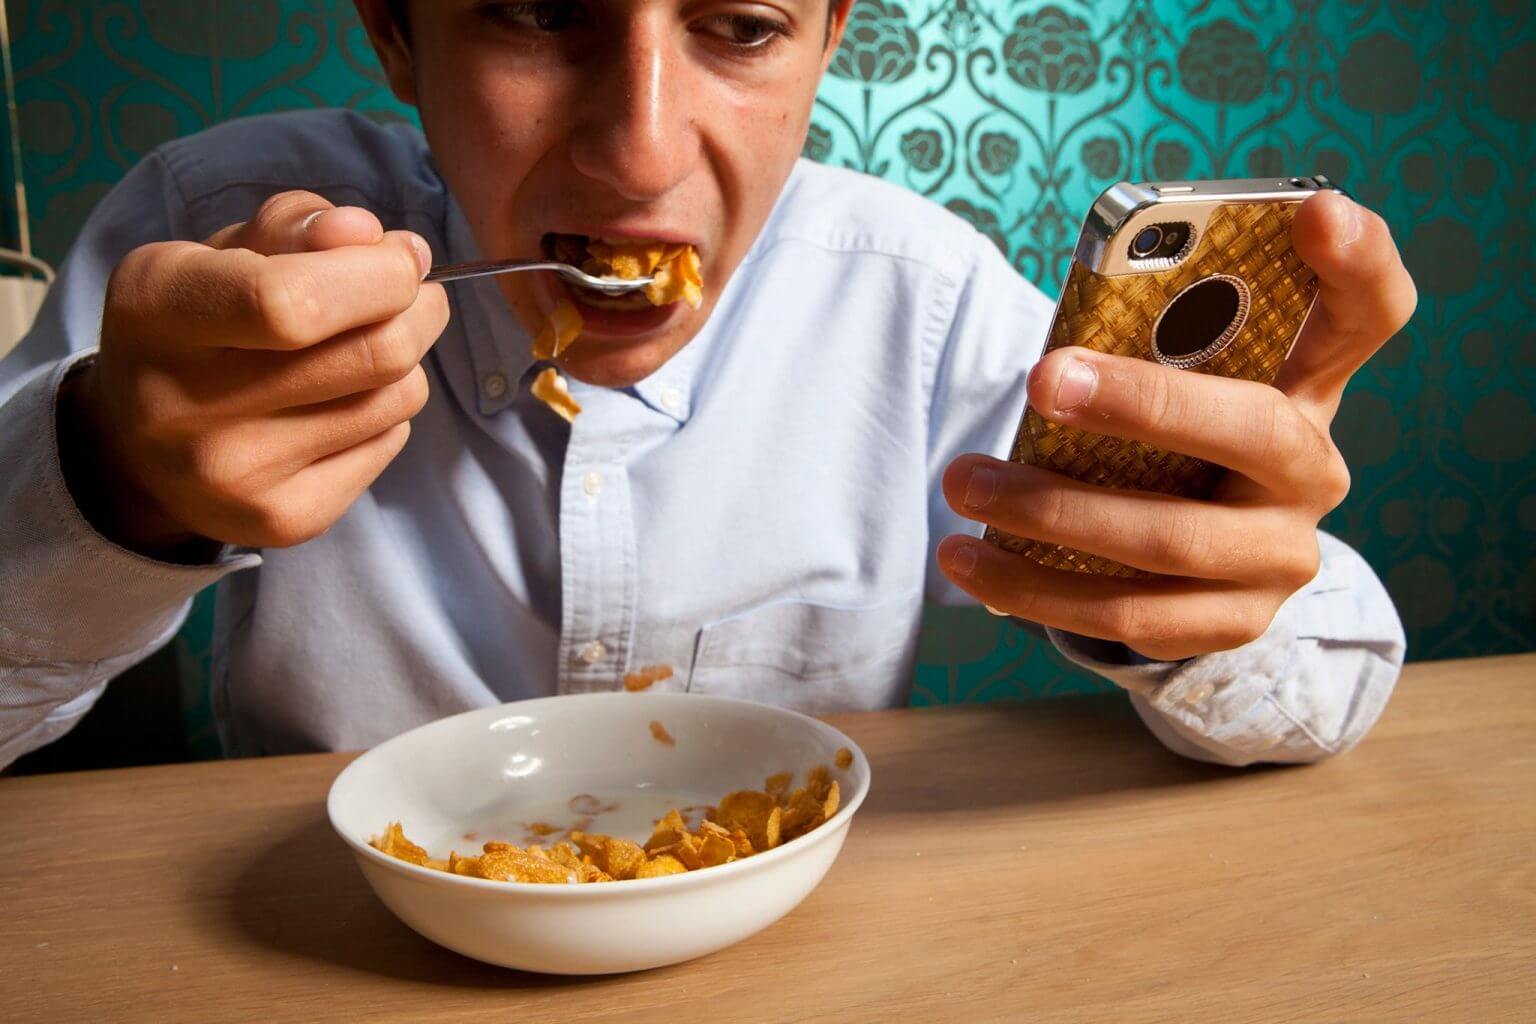 Вредно сидеть в телефоне. Кушает с телефоном. Человек кушает. Человек с мобильником за едой. Человек кушает с телефоном.